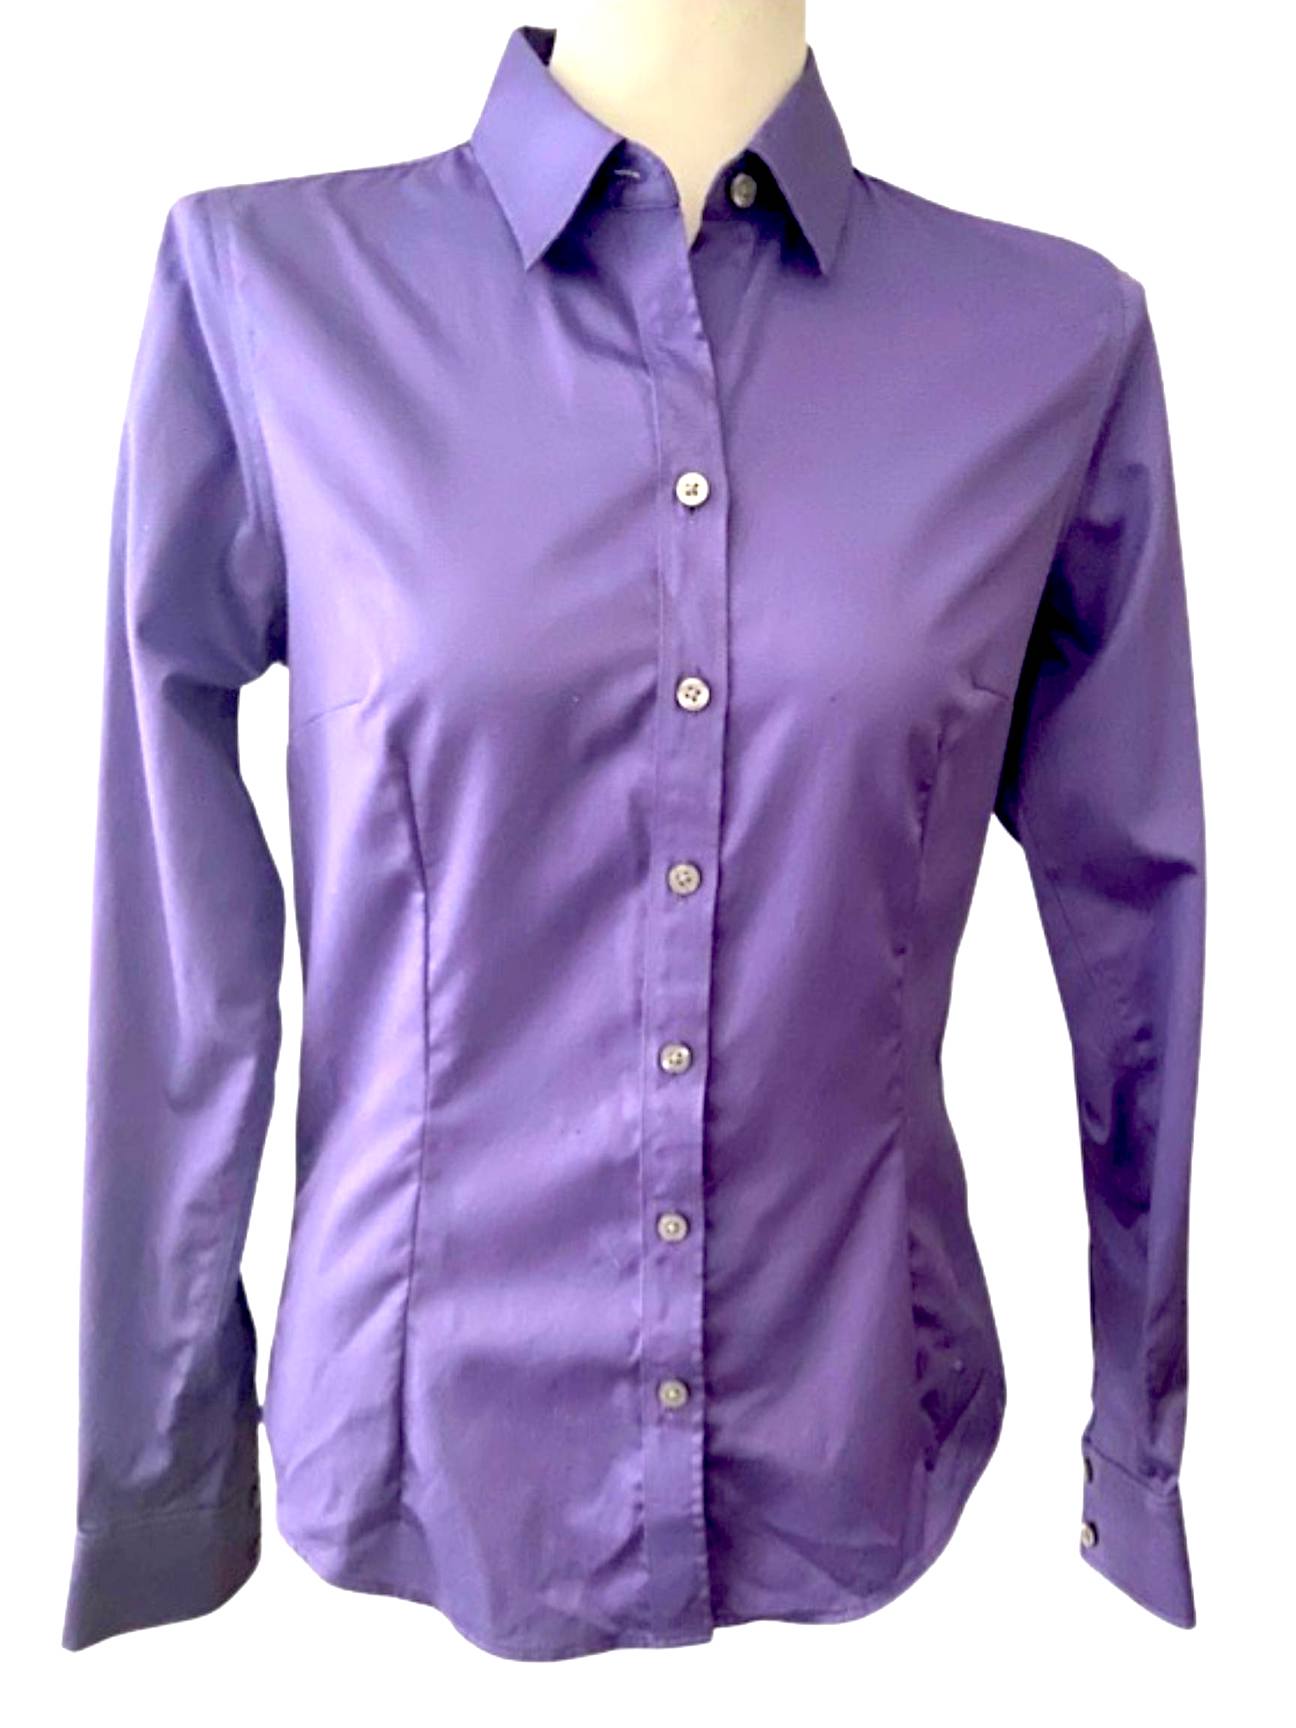 Light Summer BANANA REPUBLIC purple button down shirt